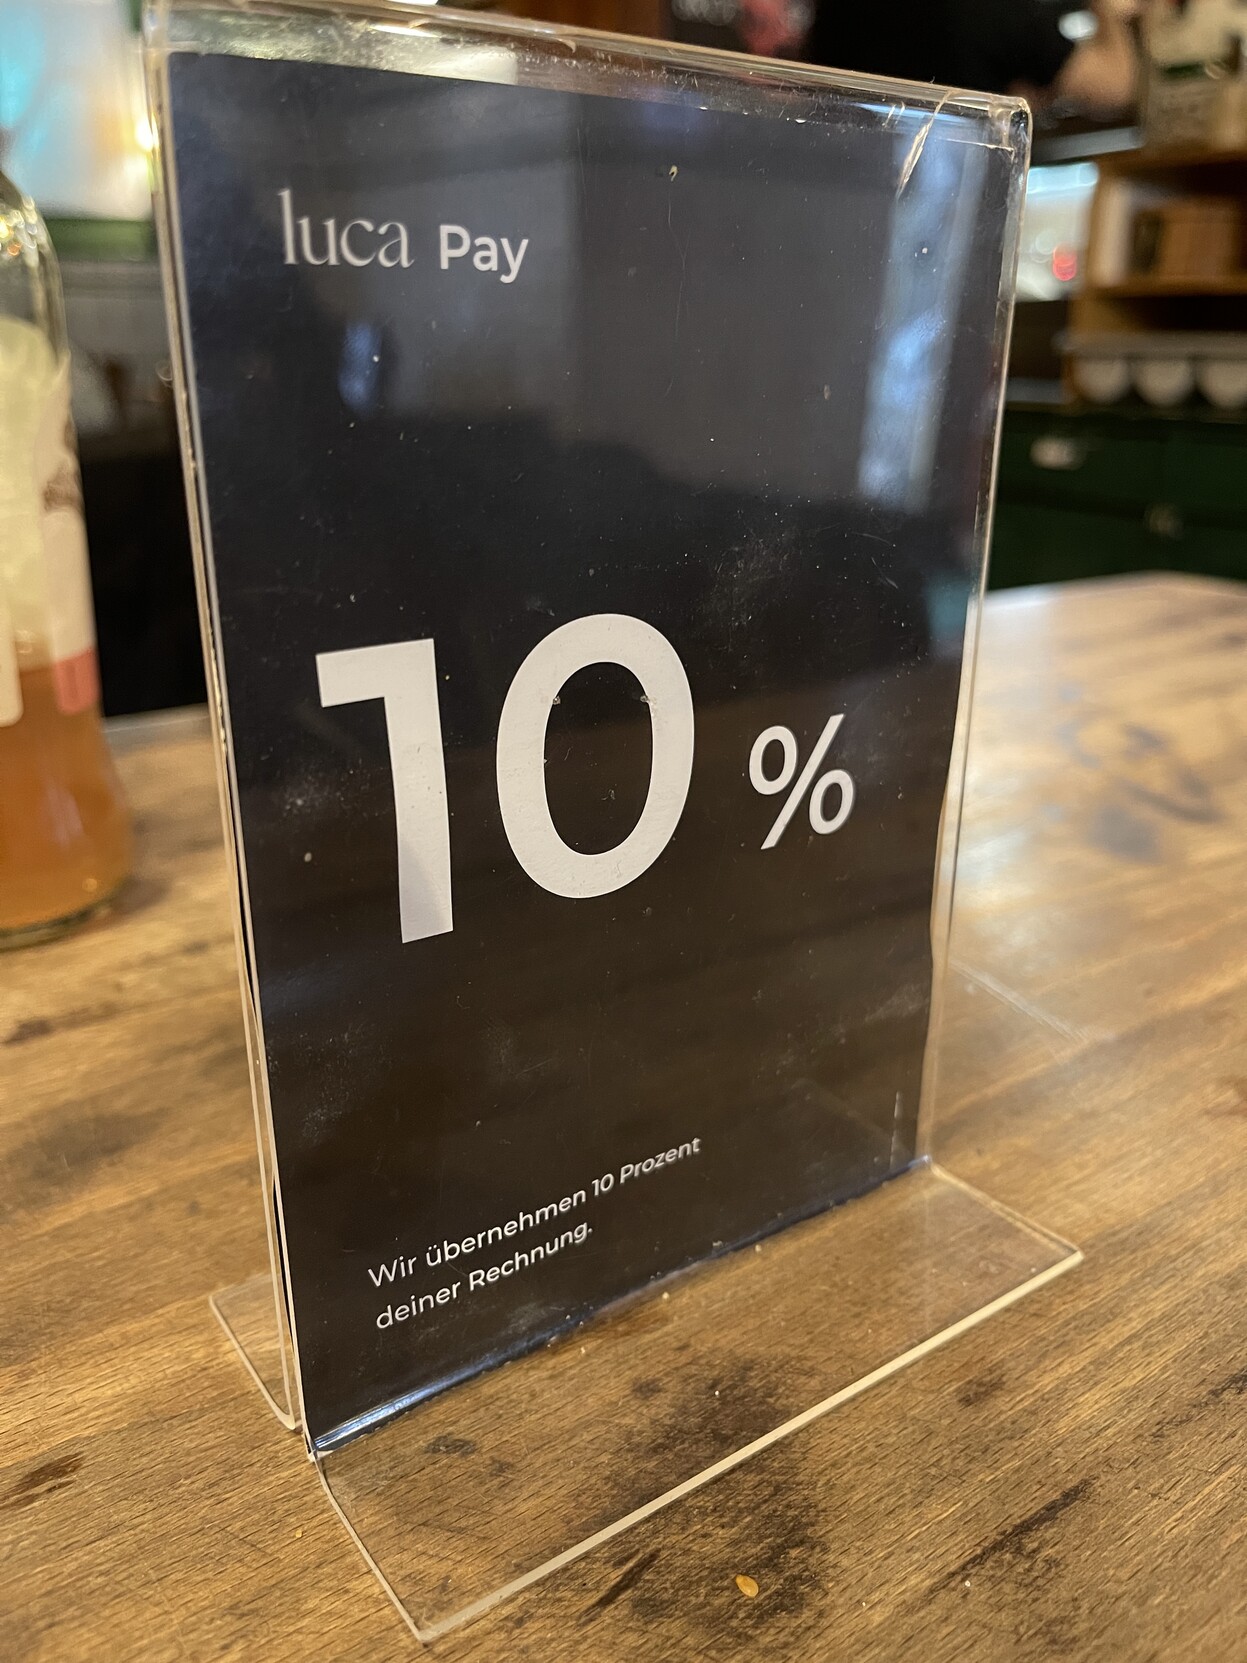 Tischaufsteller im Restaurant: „Luca Pay - Wir übernehmen 10% deiner Rechnung“